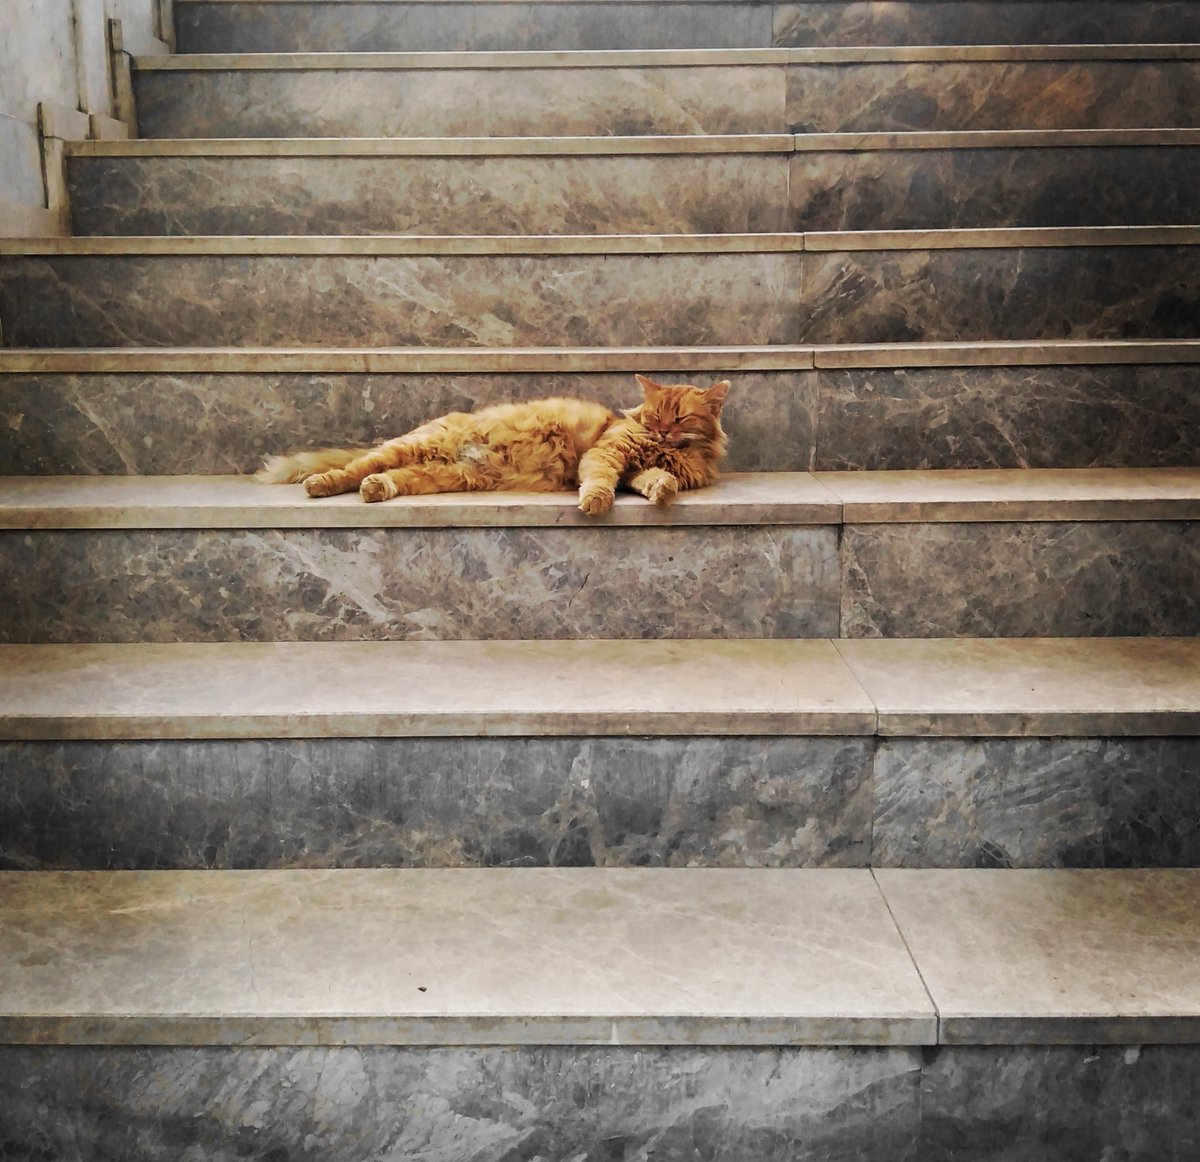 #StaircaseSaturday #Caturday 
Izmir
Türkiye